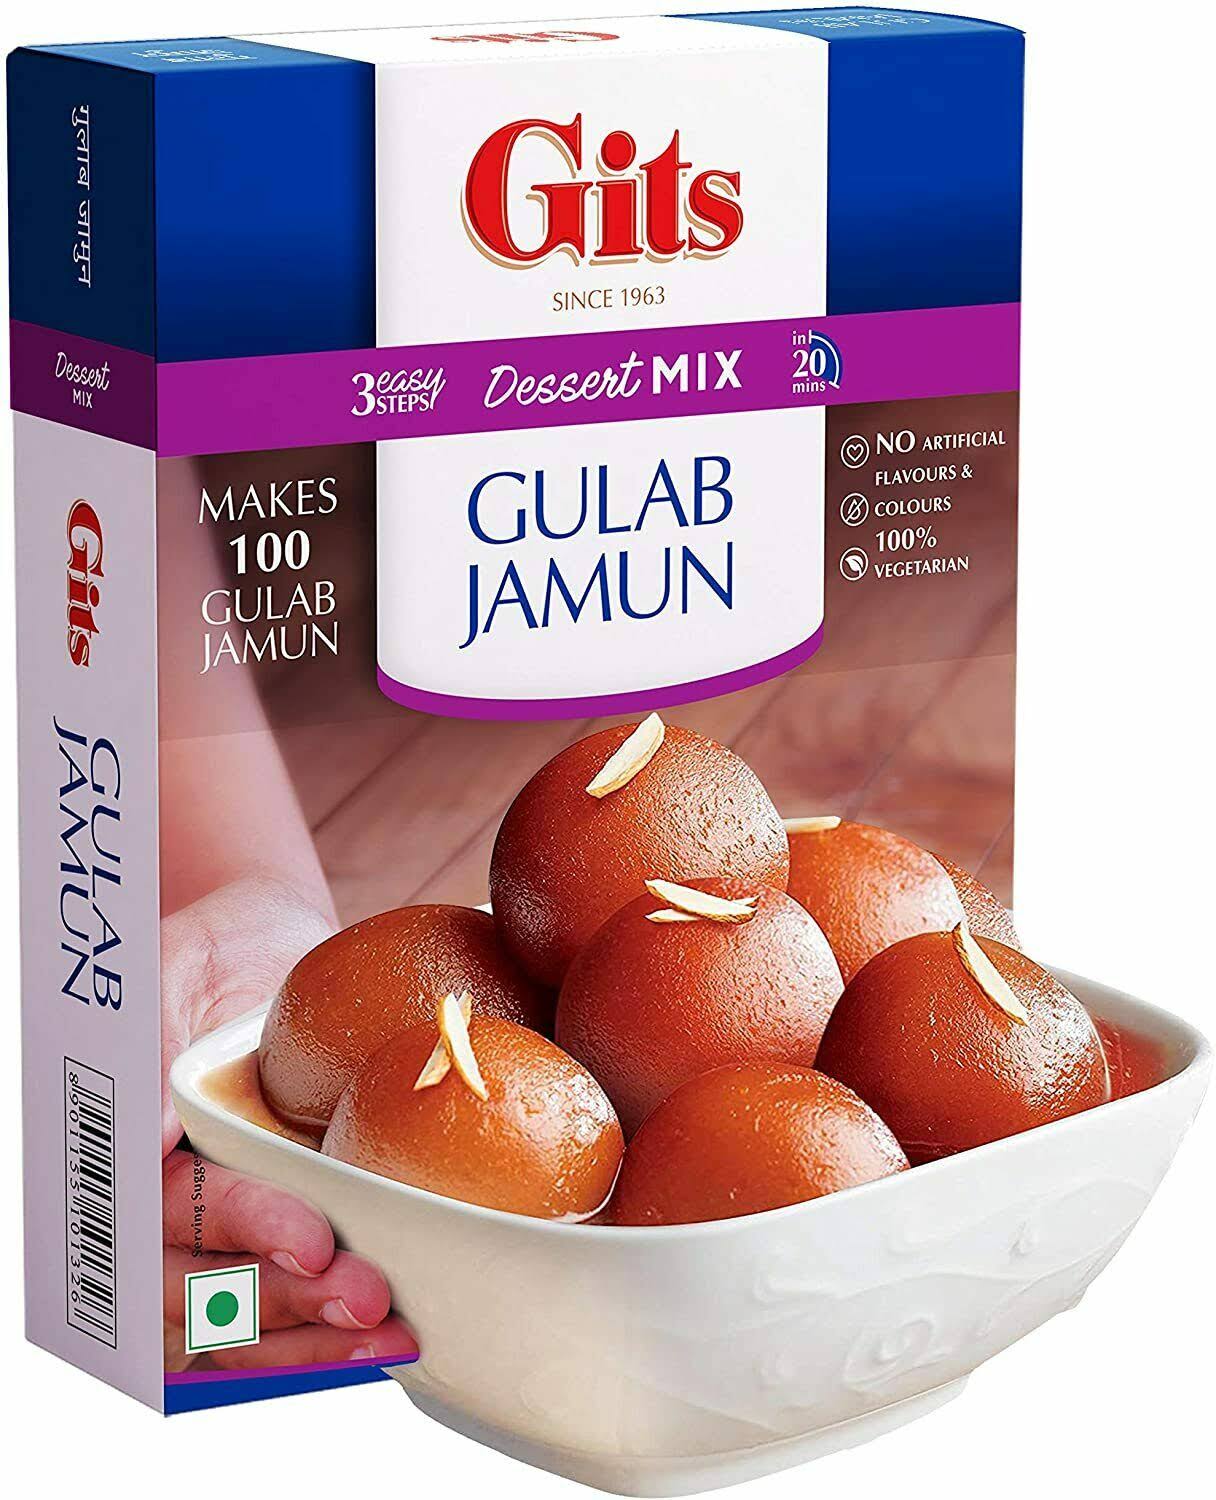 Gits Gulab Jamun - 500g